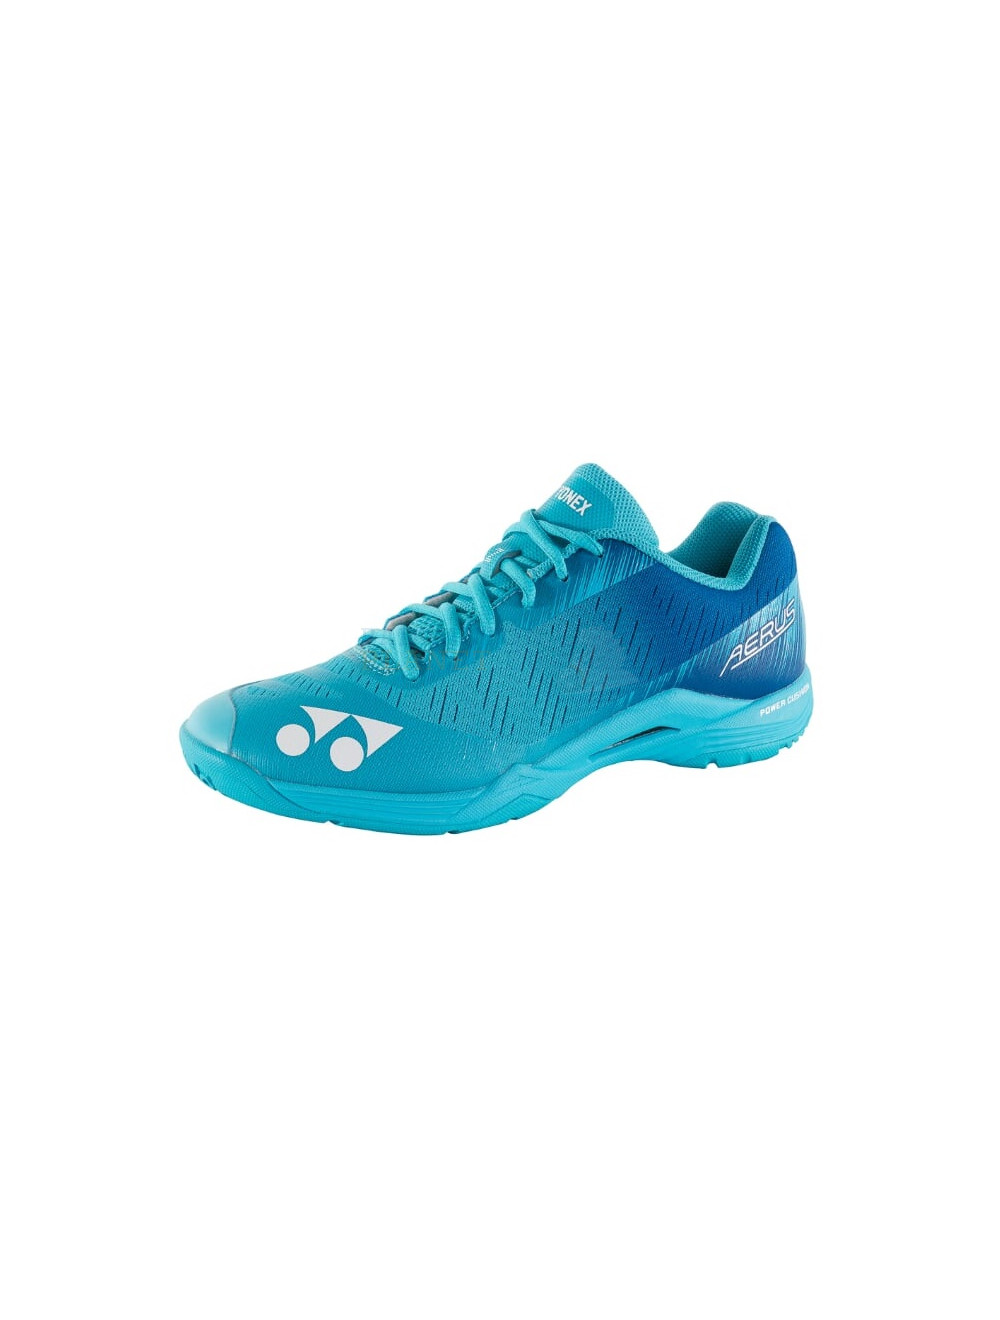 Lightest Yonex Power Cushion AERUS Z Mens Badminton Shoes SHBAZM Mint Blue 